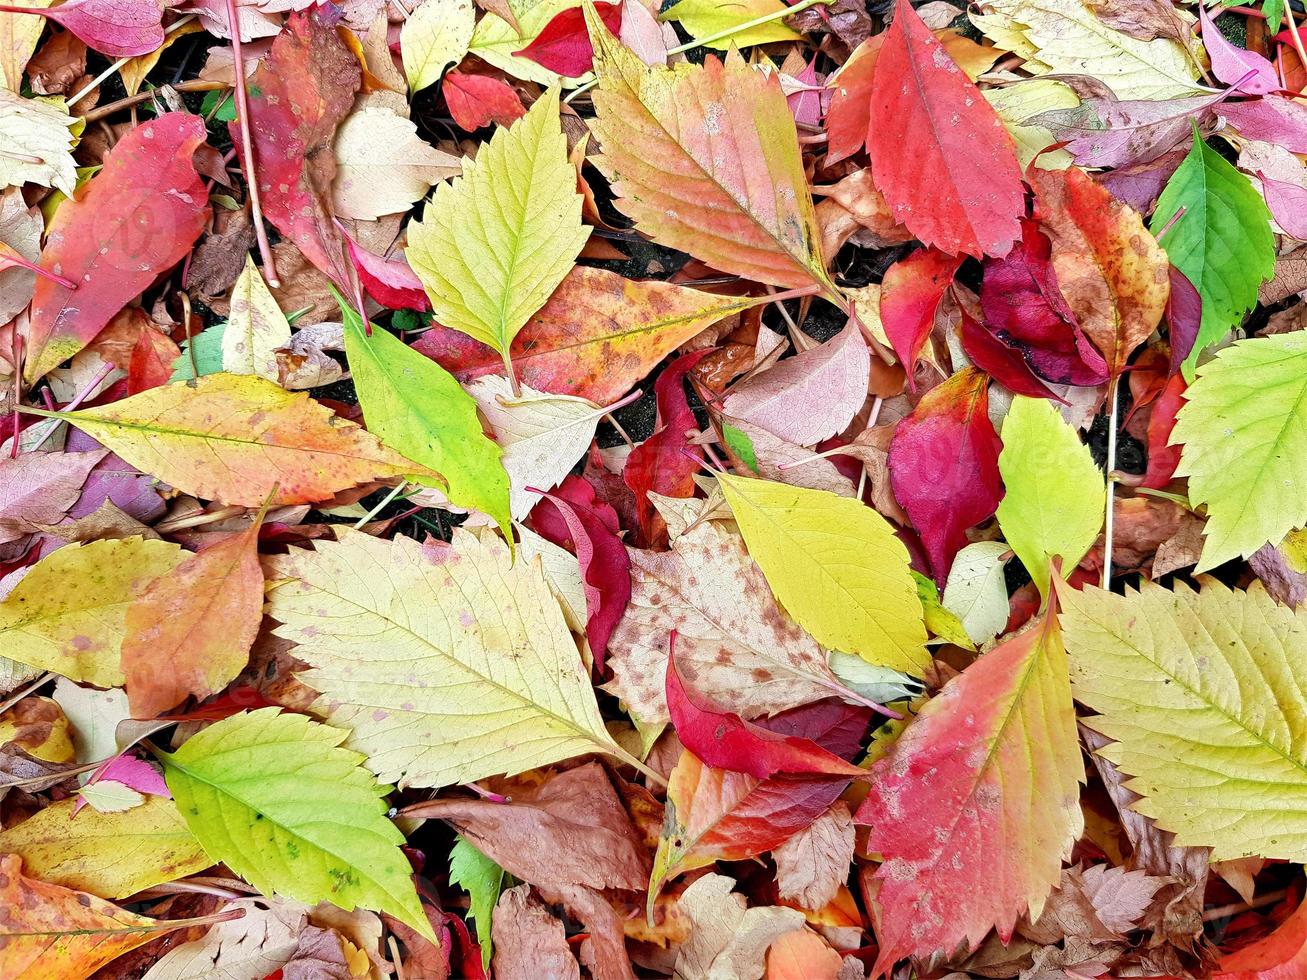 tapis d'automne de feuillage tombé coloré - jaune, orange, rouge, cramoisi, vert, marron. différentes feuilles d'automne des arbres et des feuilles de vigne grimpantes. fond clair clair. photo